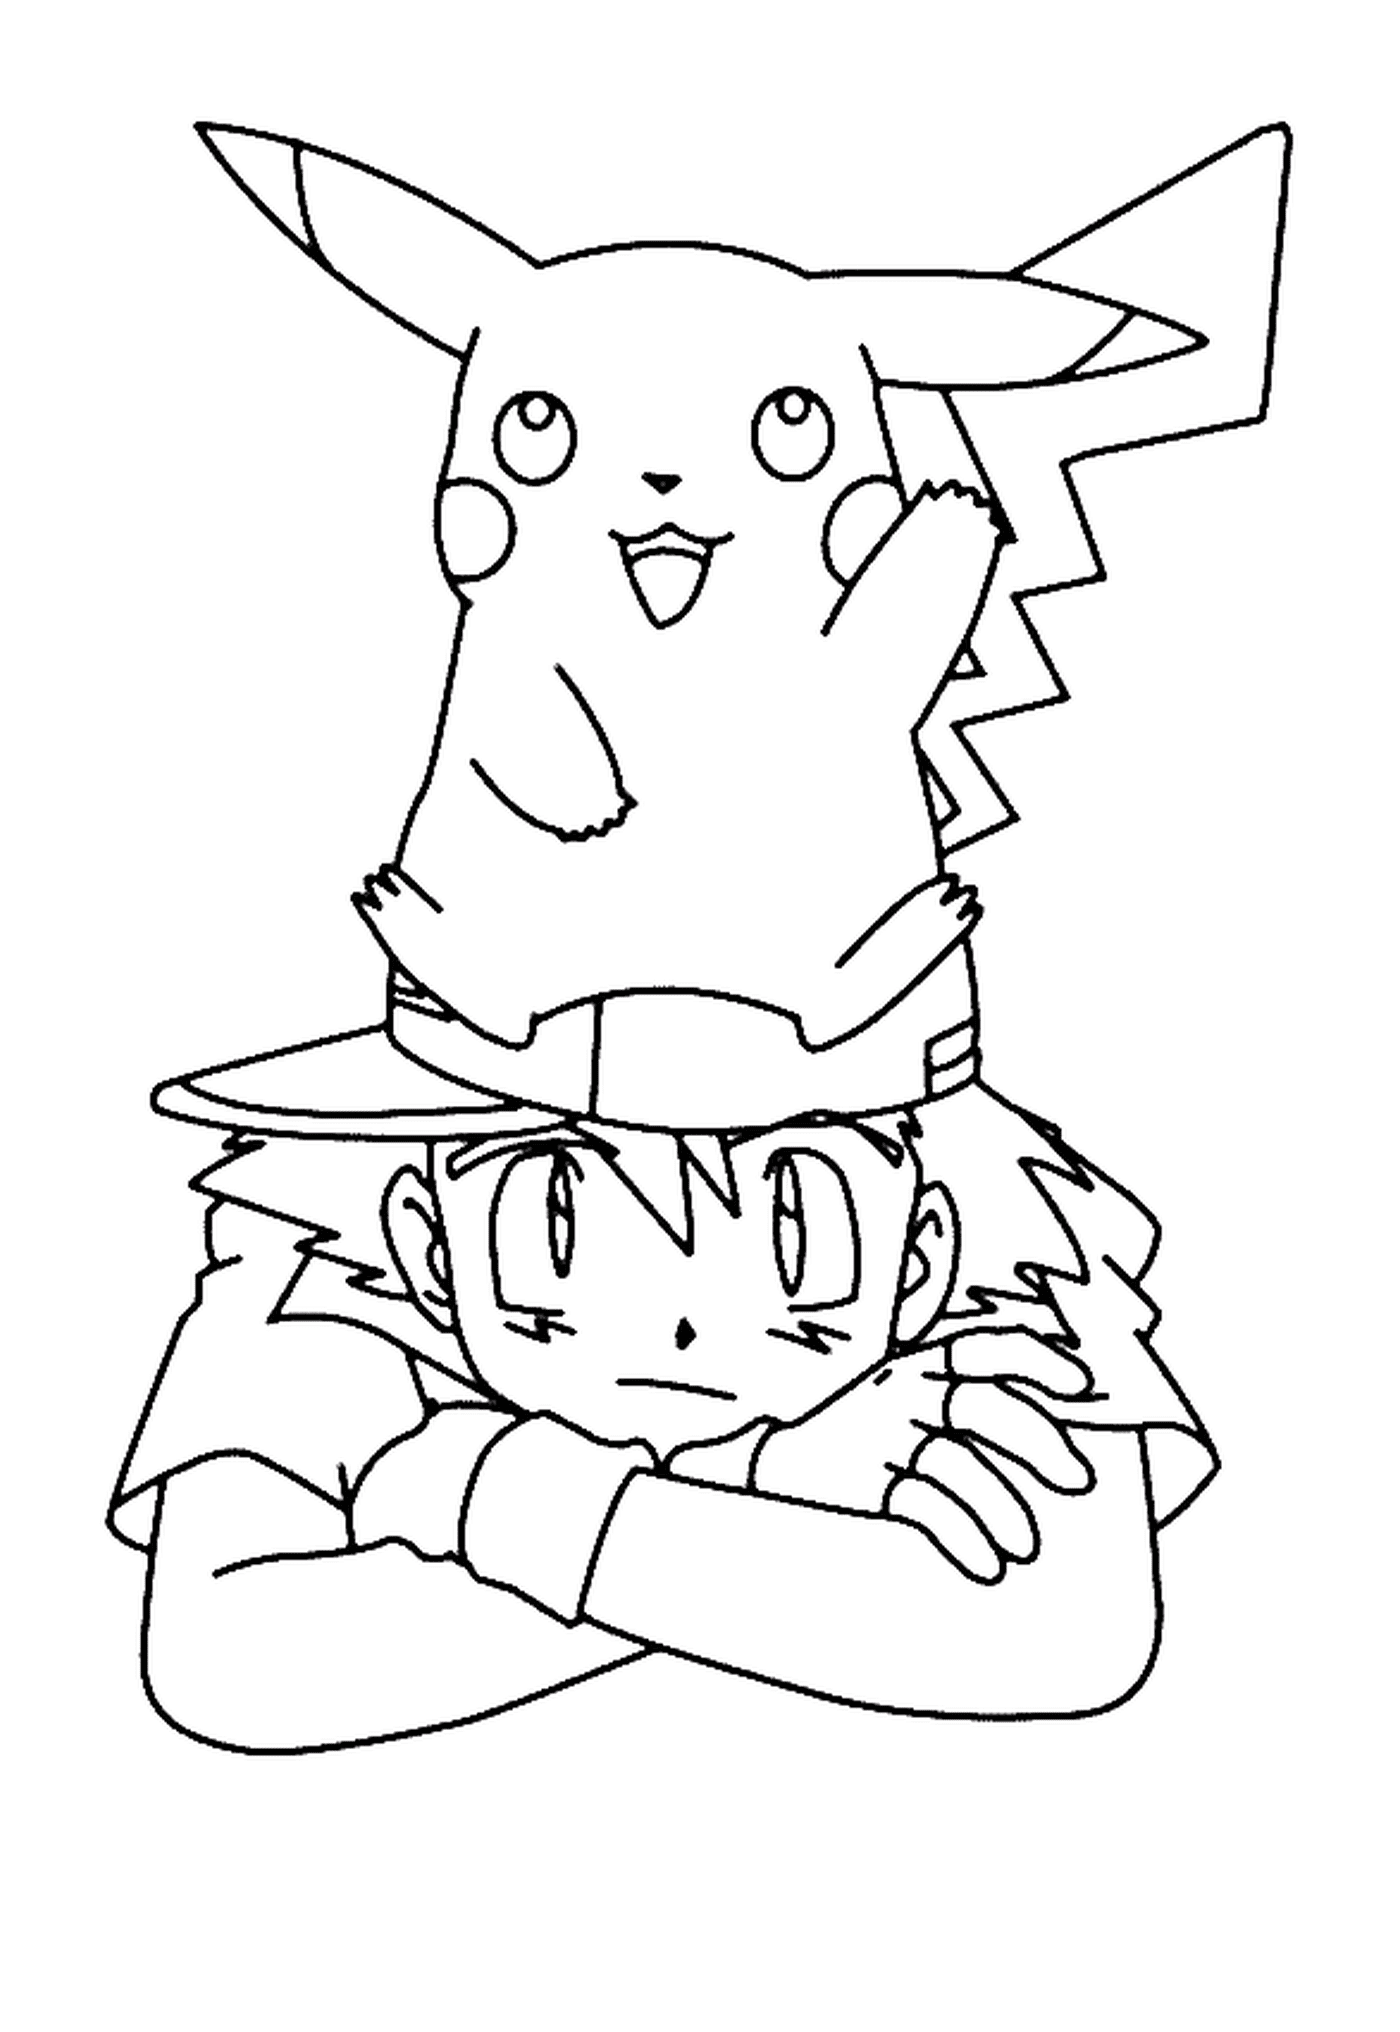  Un ragazzo e Pikachu insieme 